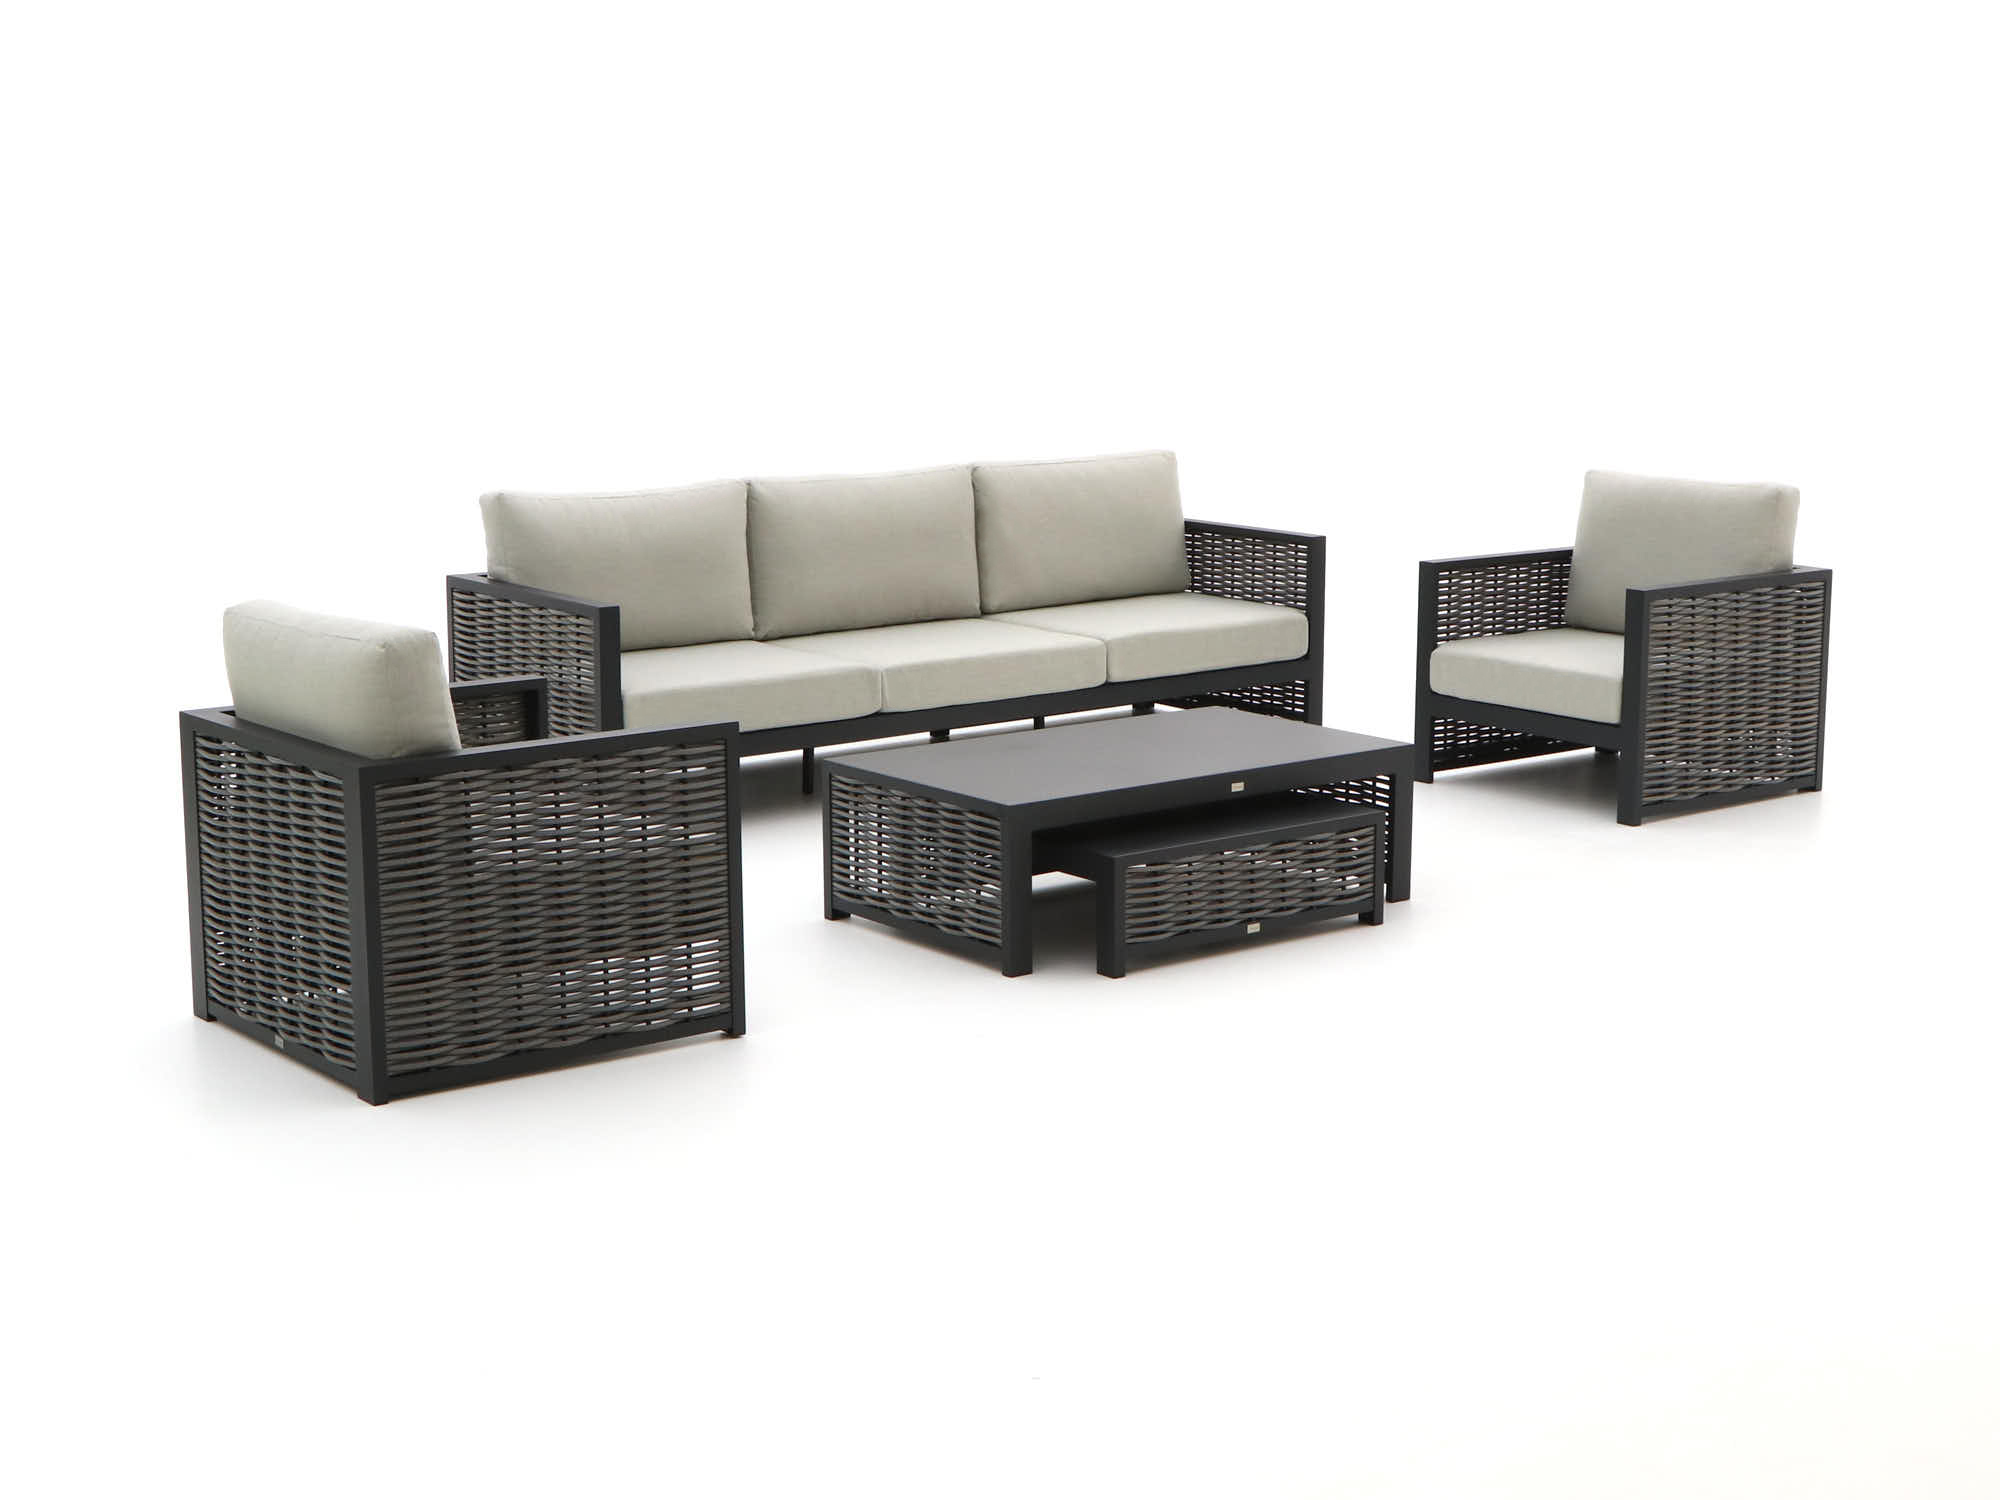 Bellagio Cadora stoel-bank loungeset 5-delig - Laagste prijsgarantie!